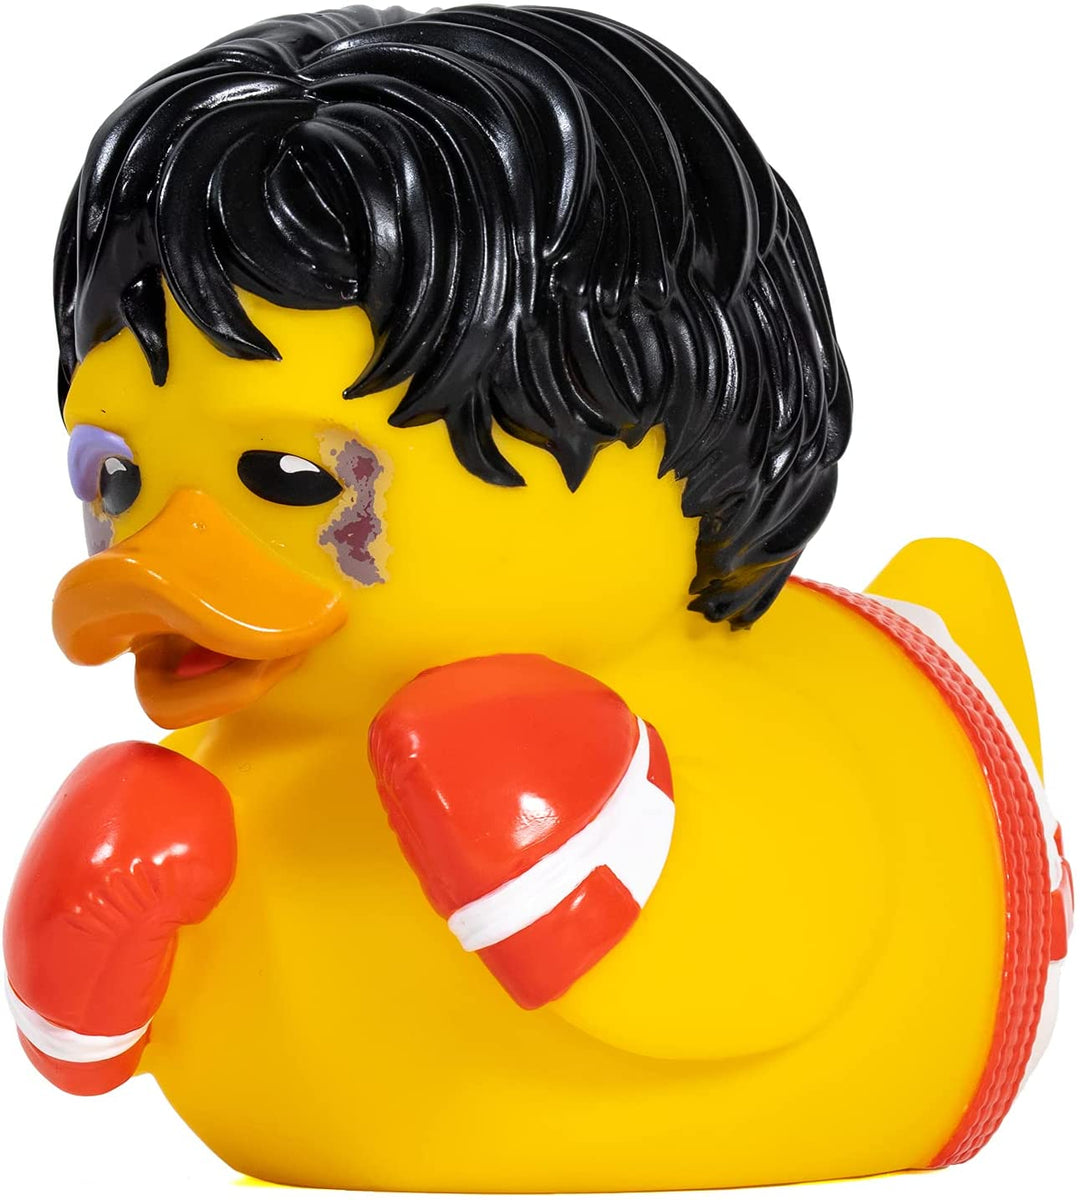 TUBBZ Rocky Balboa Duck Figur – Offizielles Rocky Merchandise – Einzigartiges Sammler-Vinylgeschenk in limitierter Auflage